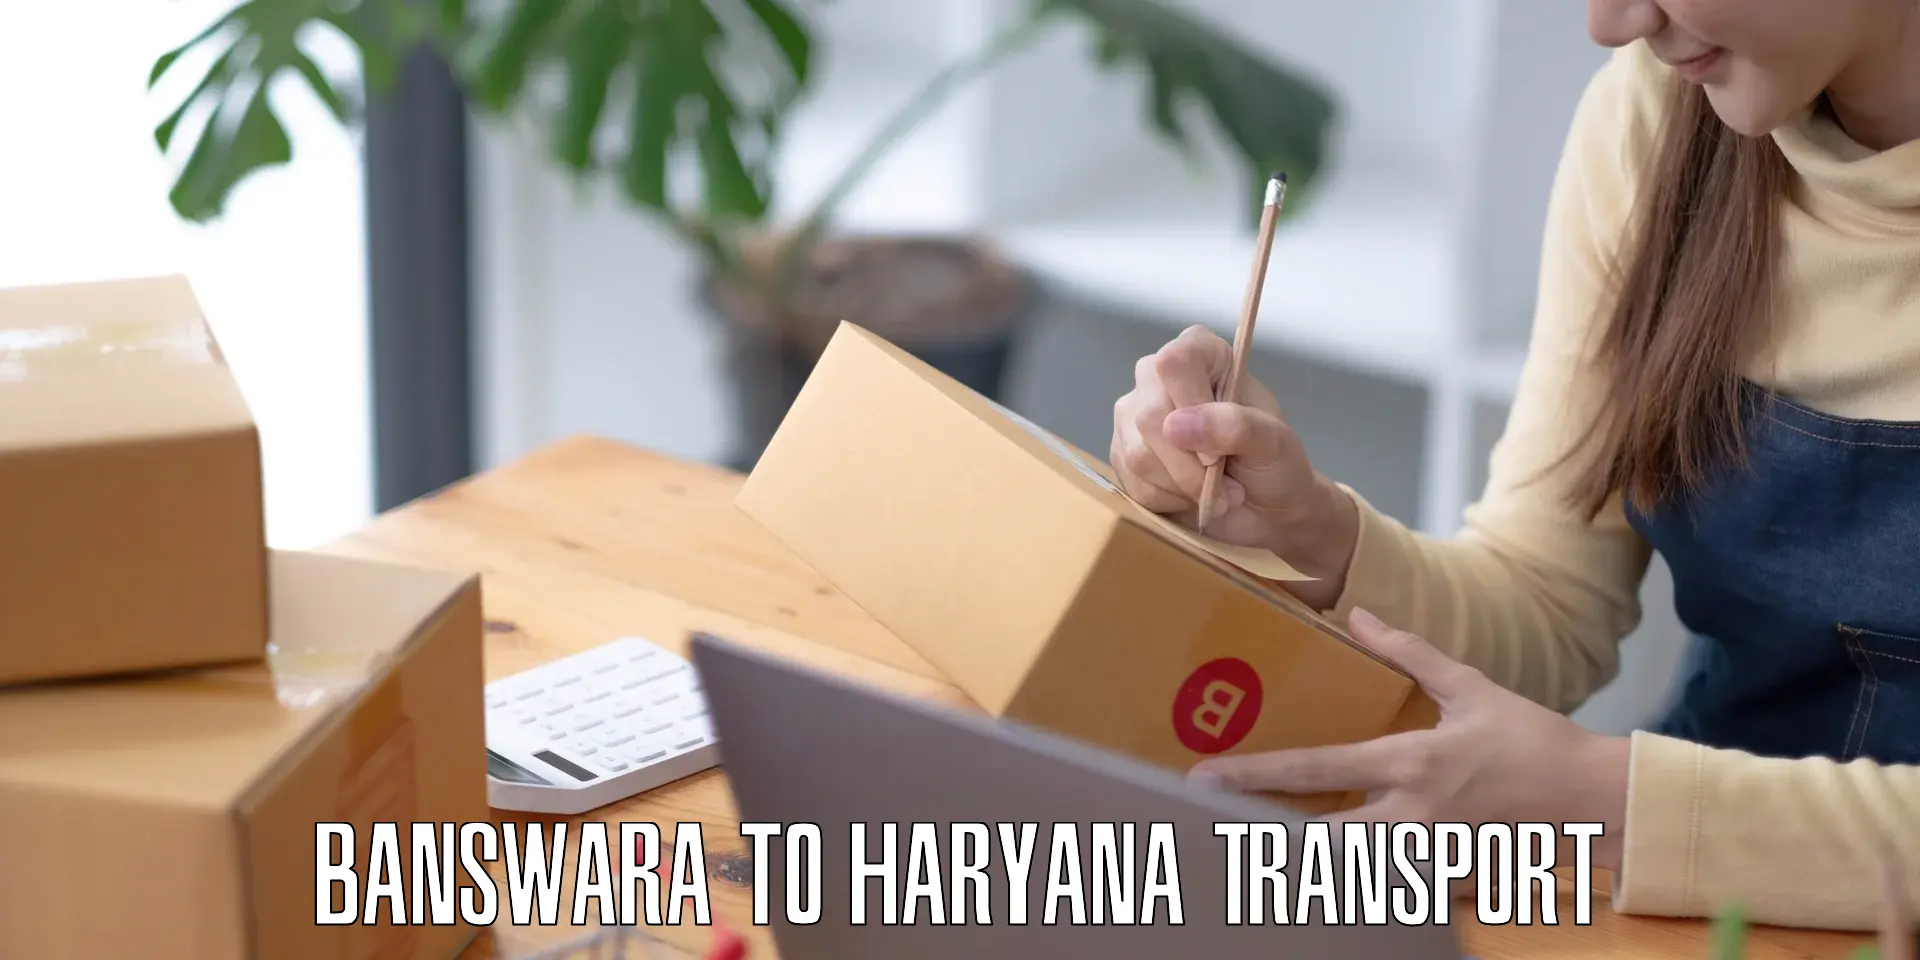 Delivery service Banswara to Dharuhera